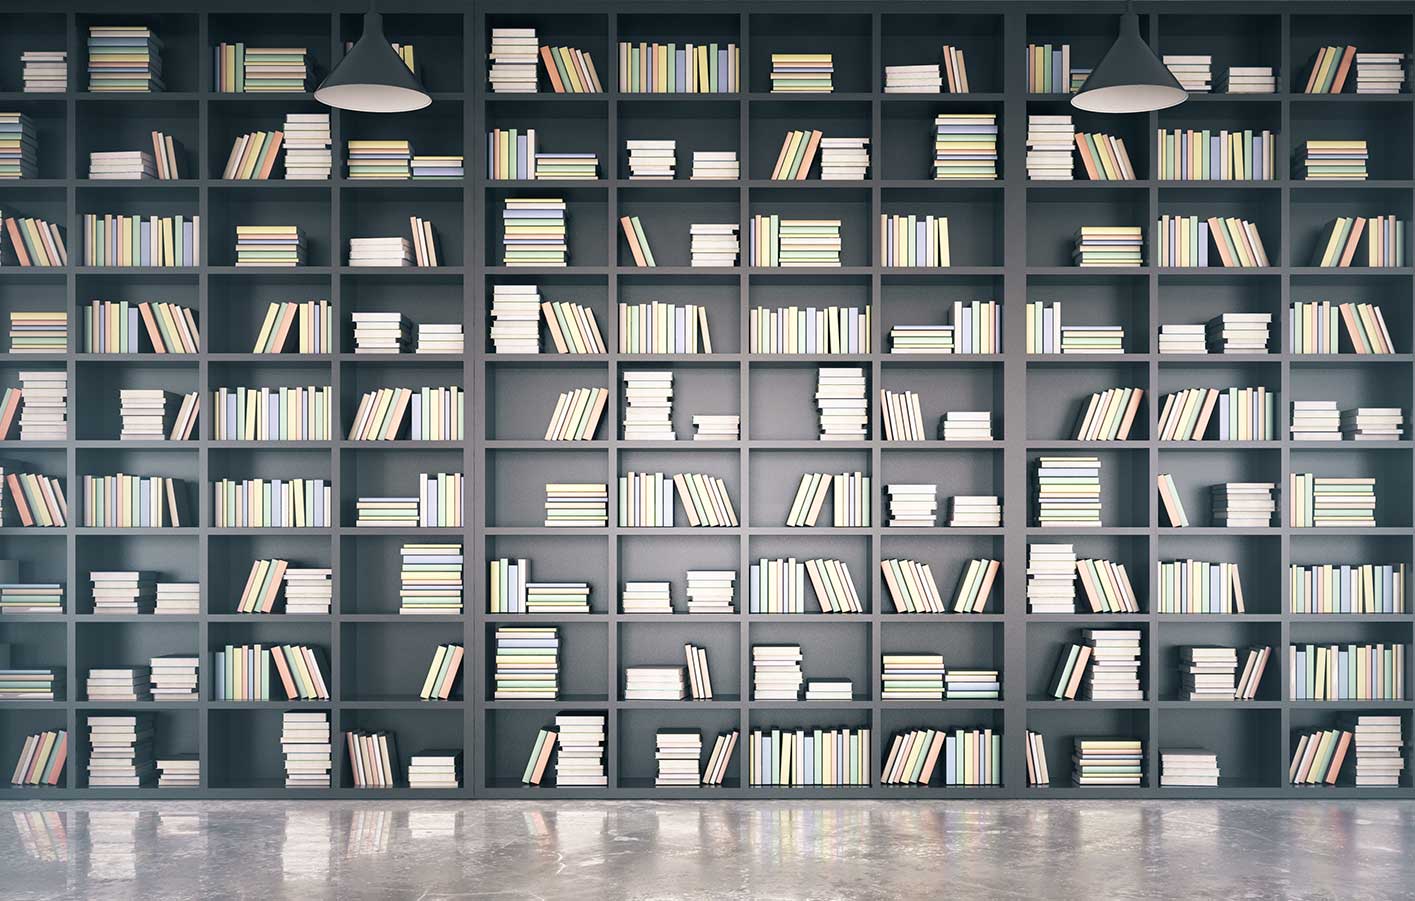 Bücher in einem Bücherregal über eine ganze Wand.